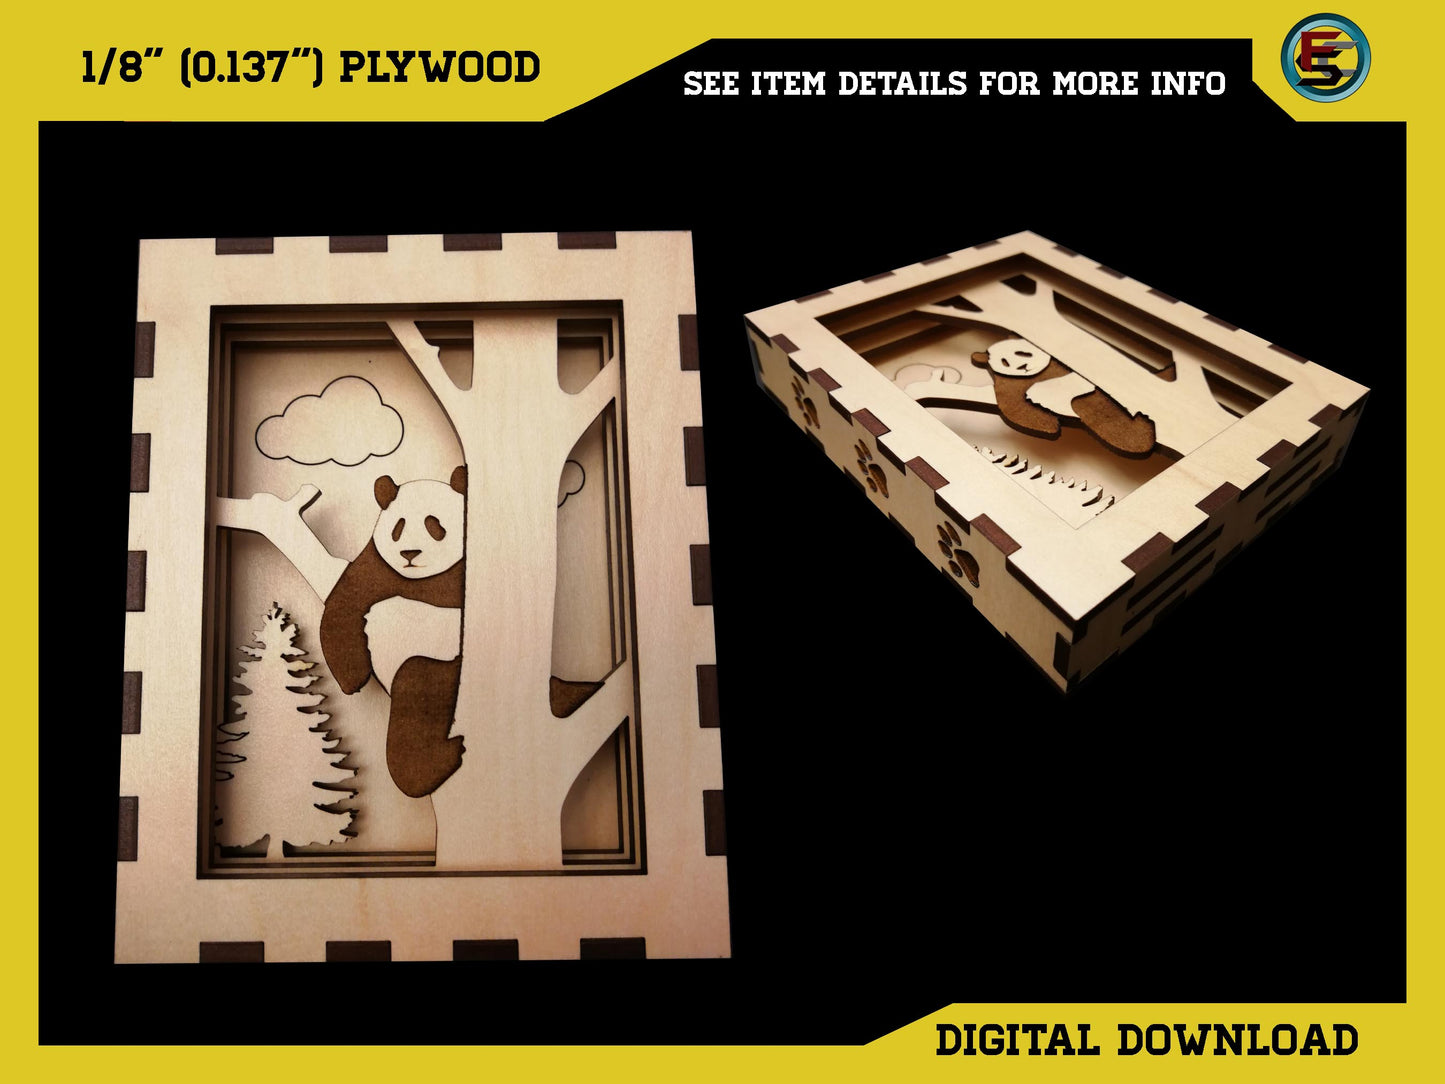 Layered Panda Box